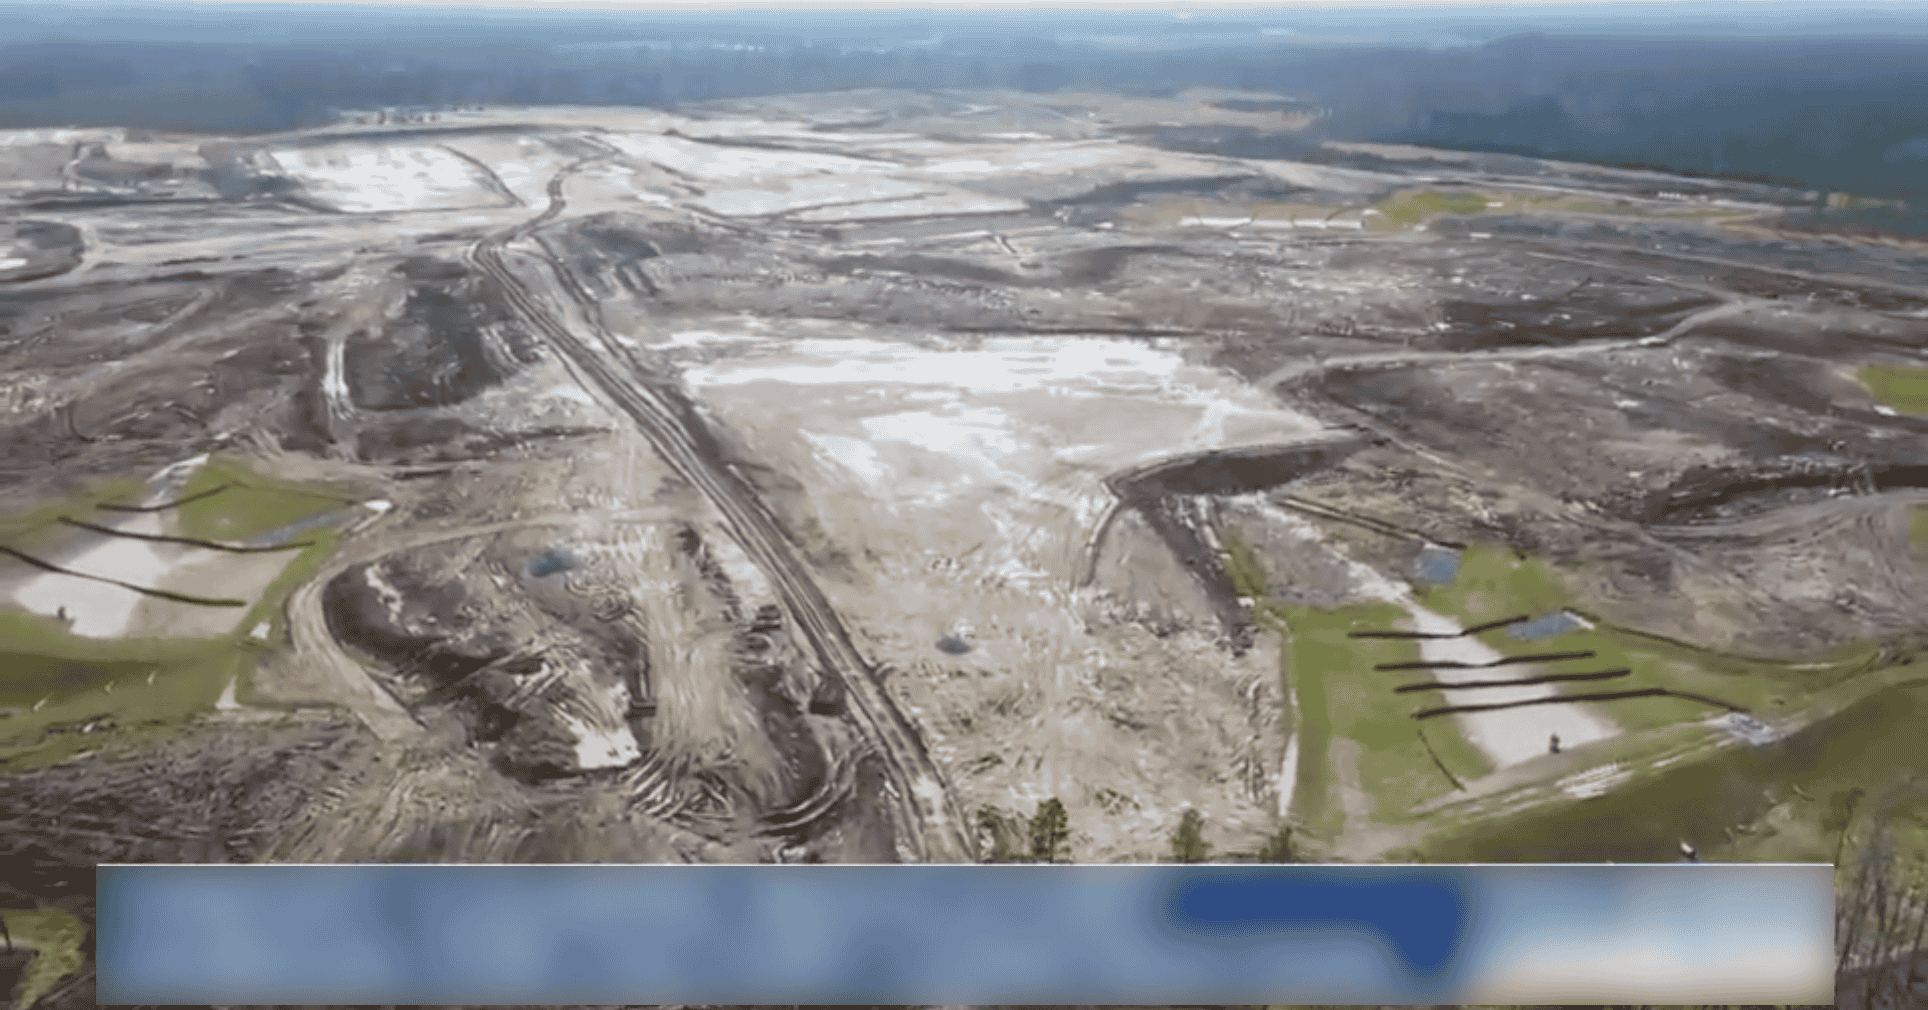 Toàn cảnh khu đất xây nhà máy 4 tỷ đô của VinFast tại Mỹ: Rộng 800ha, gần các ông trùm công nghệ Apple, Google - Ảnh 1.